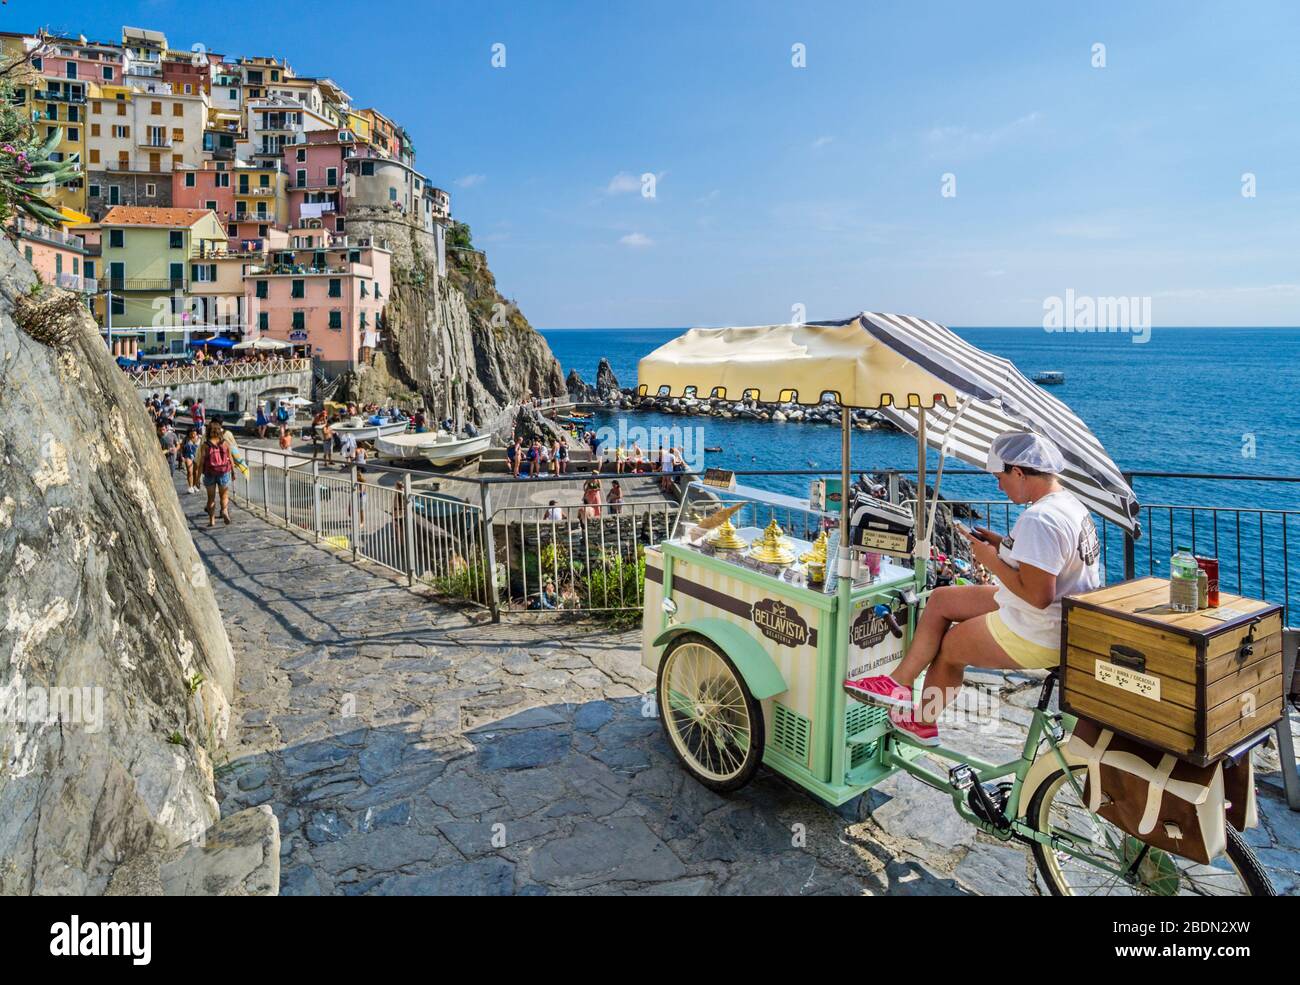 Gelateria mobile sulla scogliera che sovrastano il Mar Ligure a Monarola, cinque Terre, Liguria, Italia Foto Stock